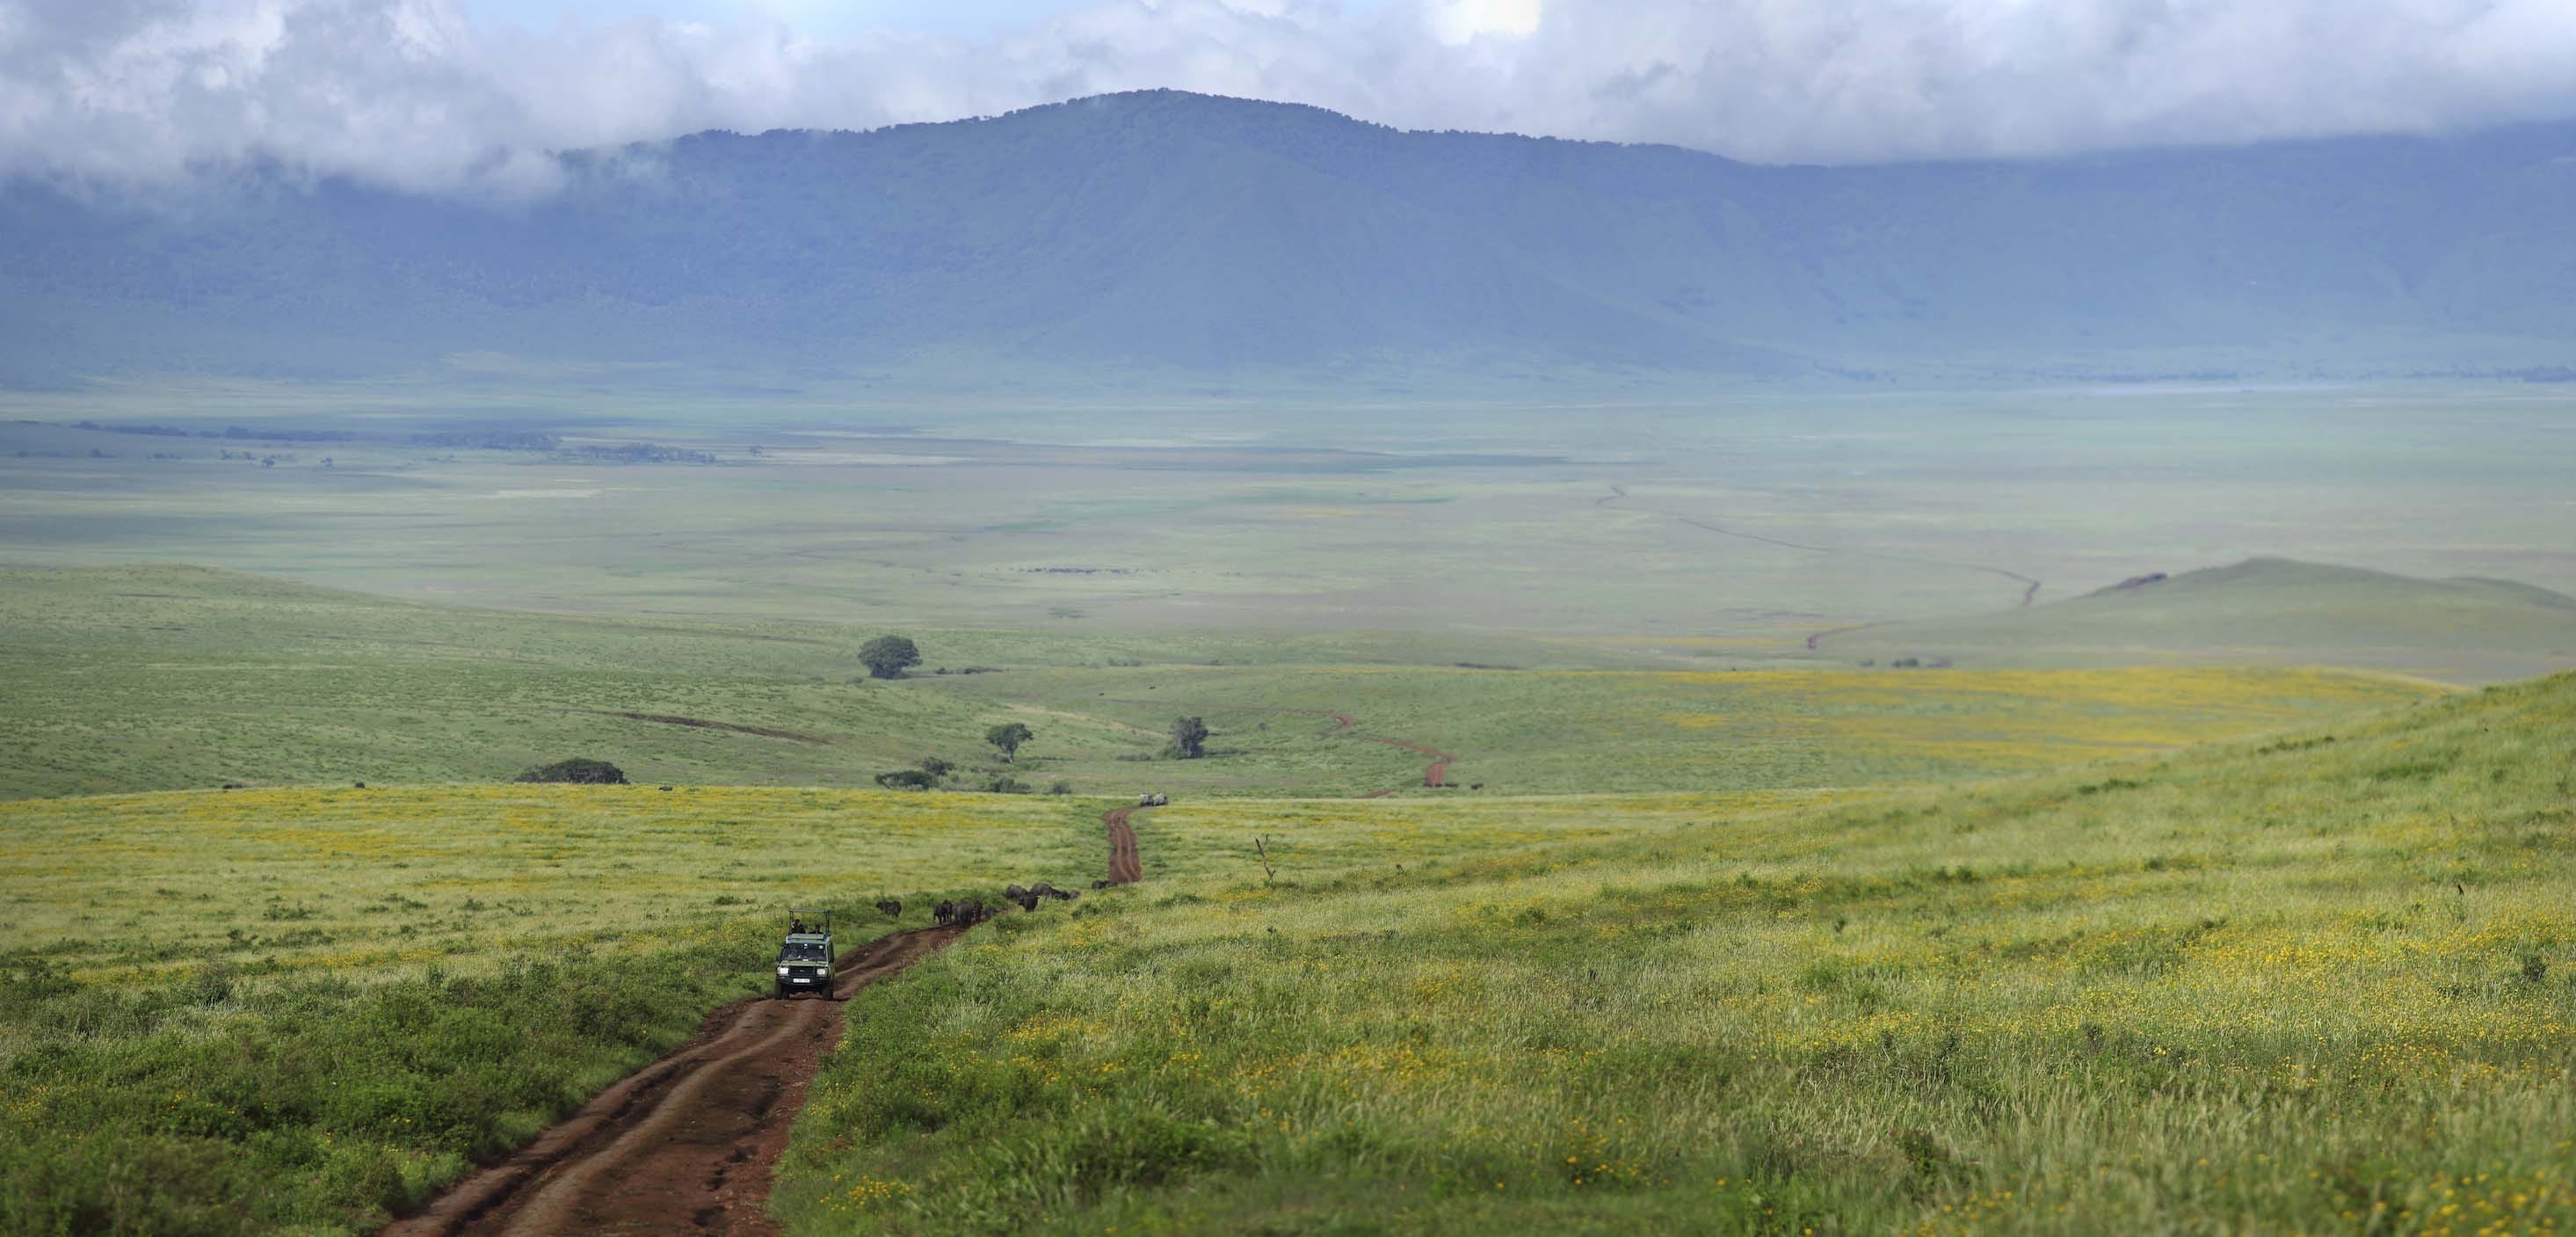 Tanzania, Ngorongoro Crater Highlands, 2940x1410 Dual Screen Desktop